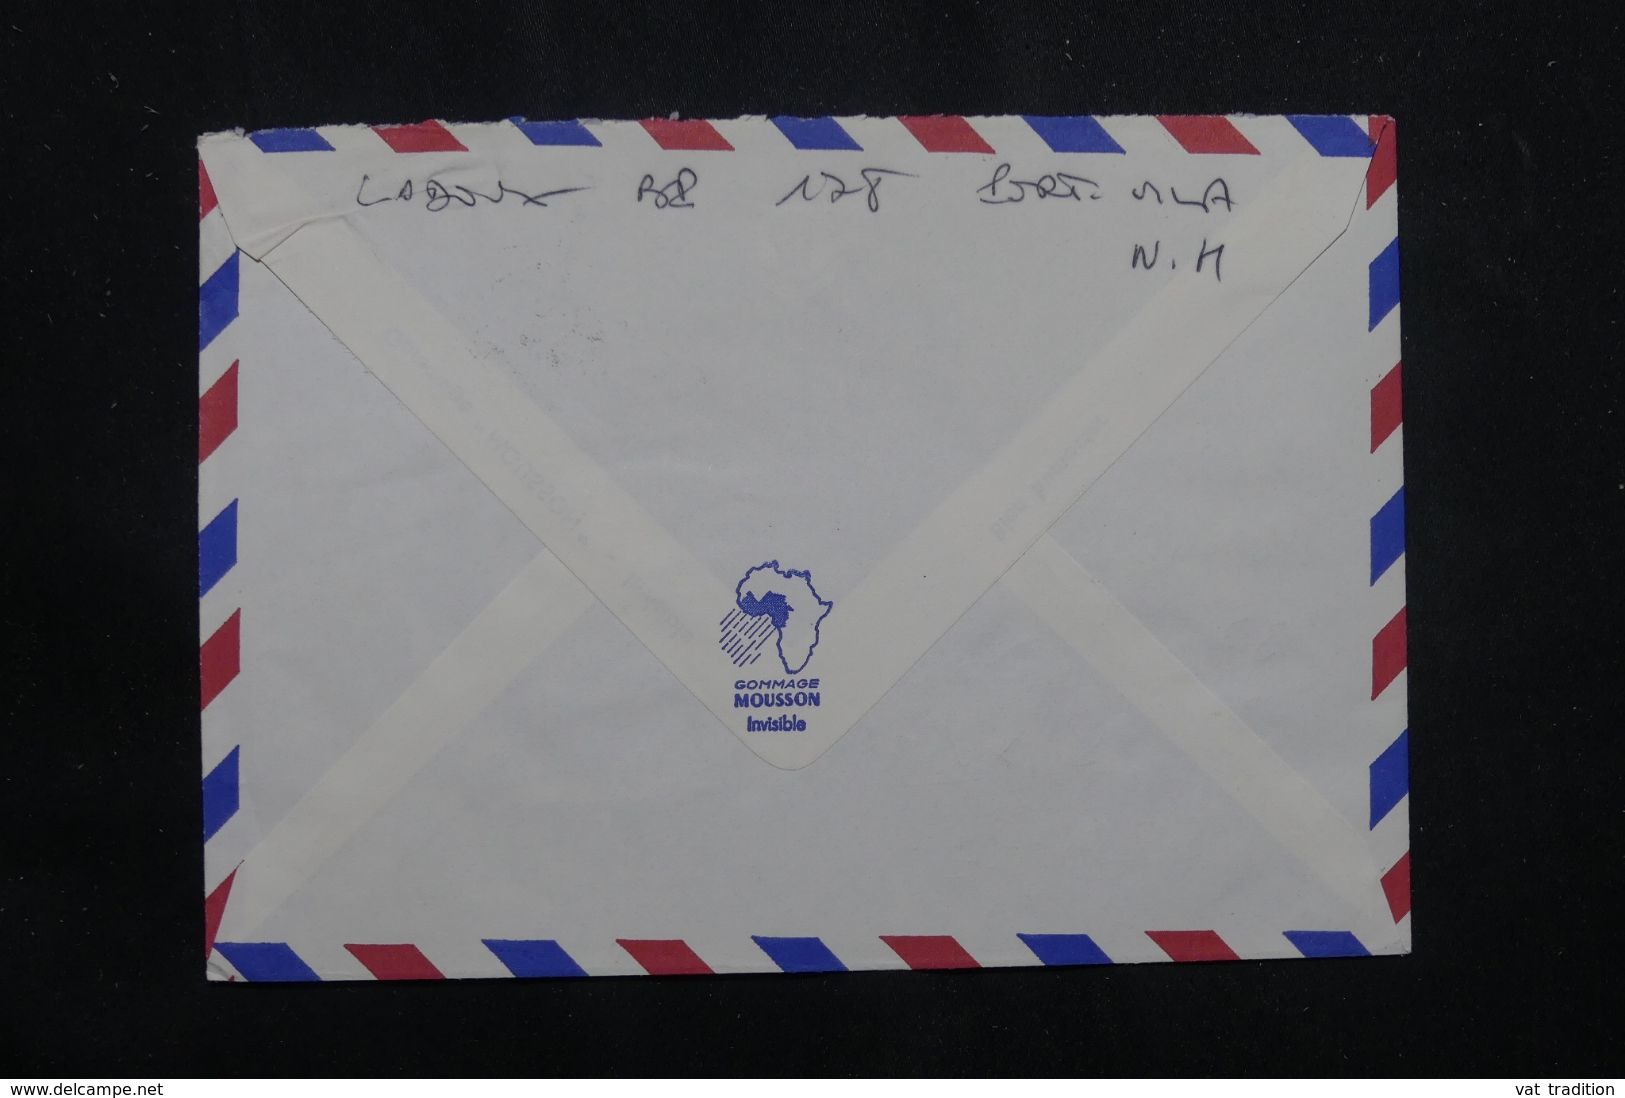 NOUVELLE HÉBRIDES - Enveloppe De Vila Pour Paris En 1972  - L 65853 - Briefe U. Dokumente